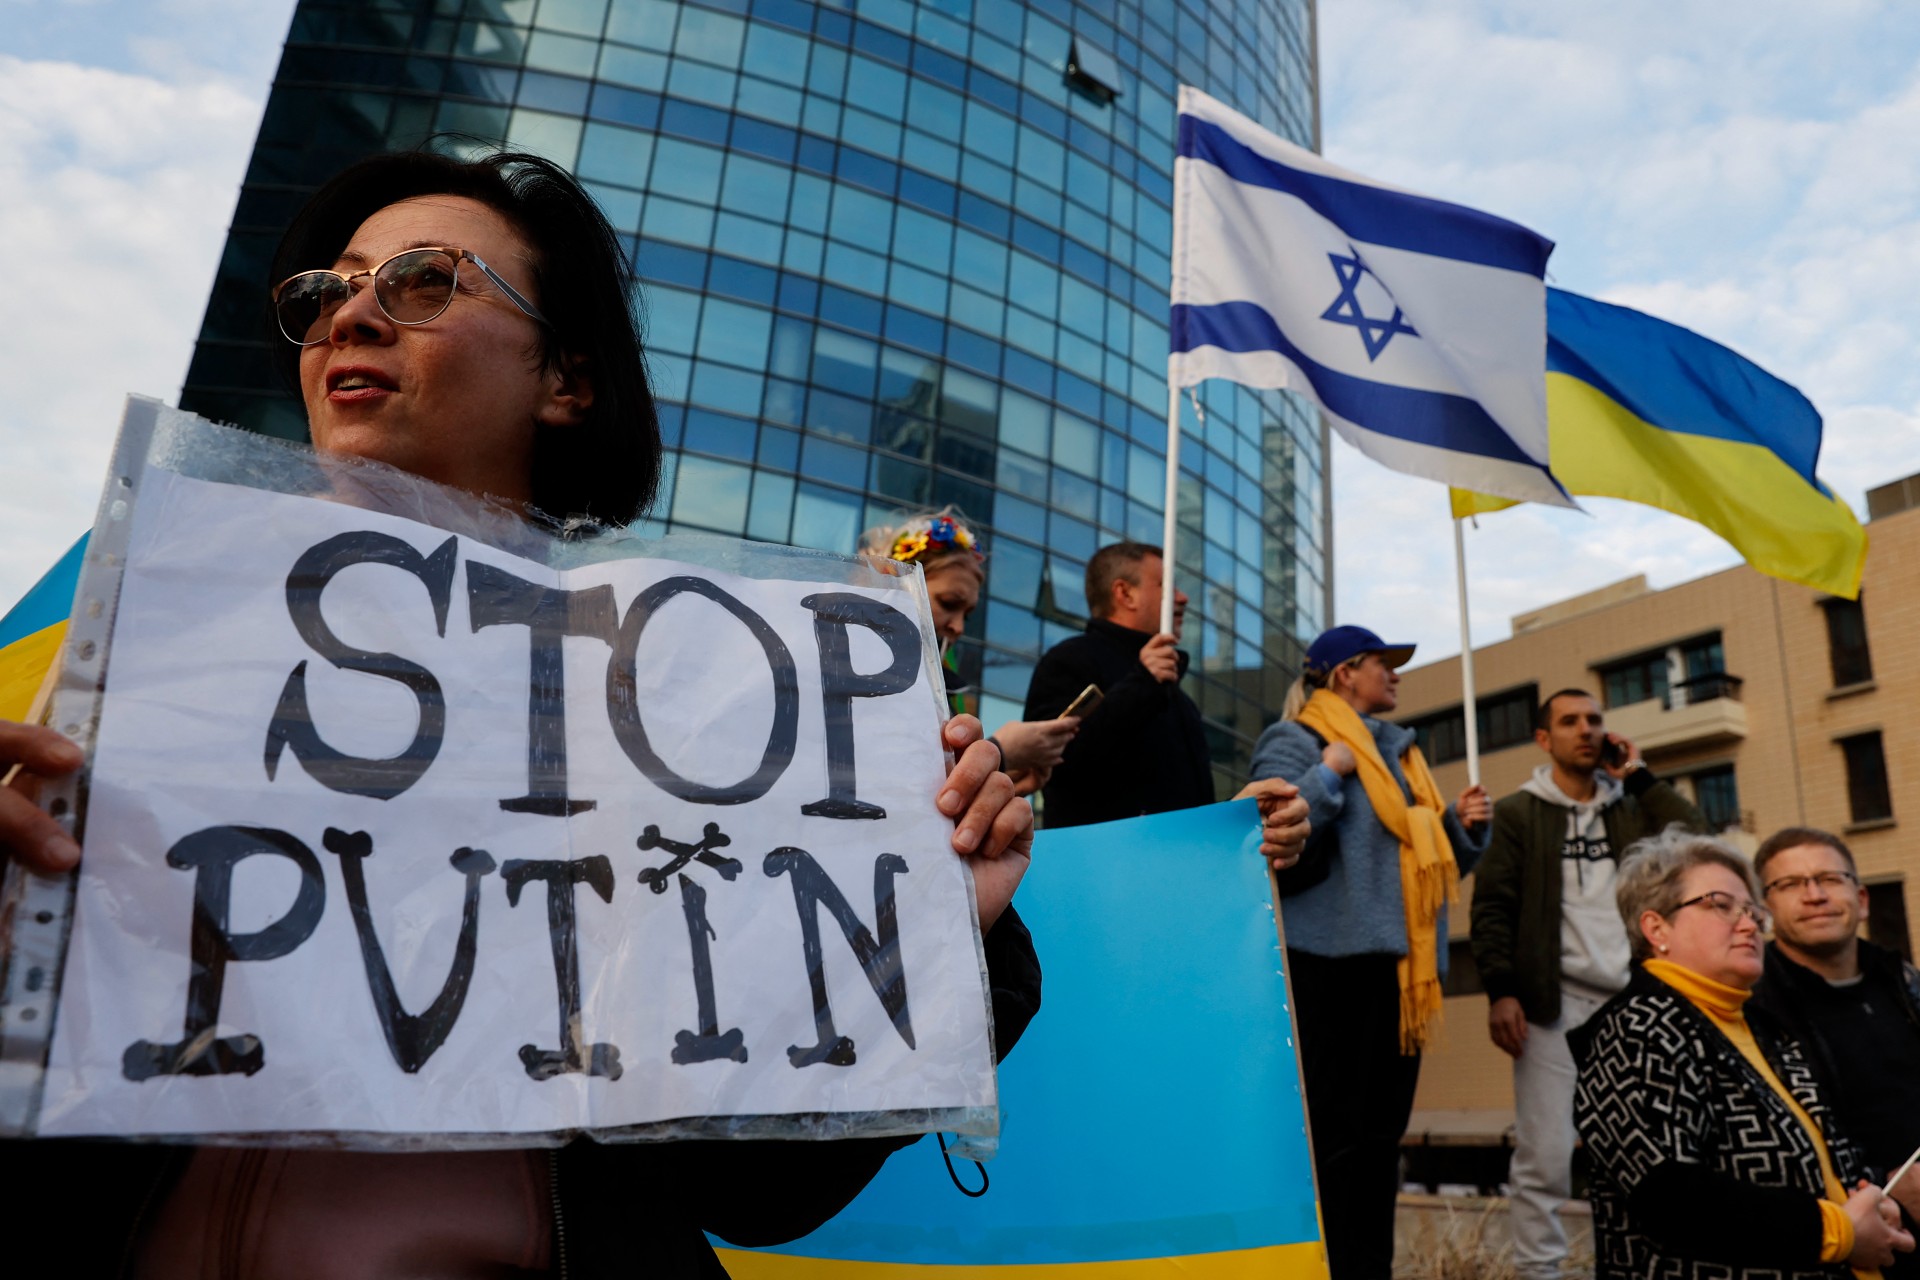 People demonstrating against Russia in Tel Aviv 